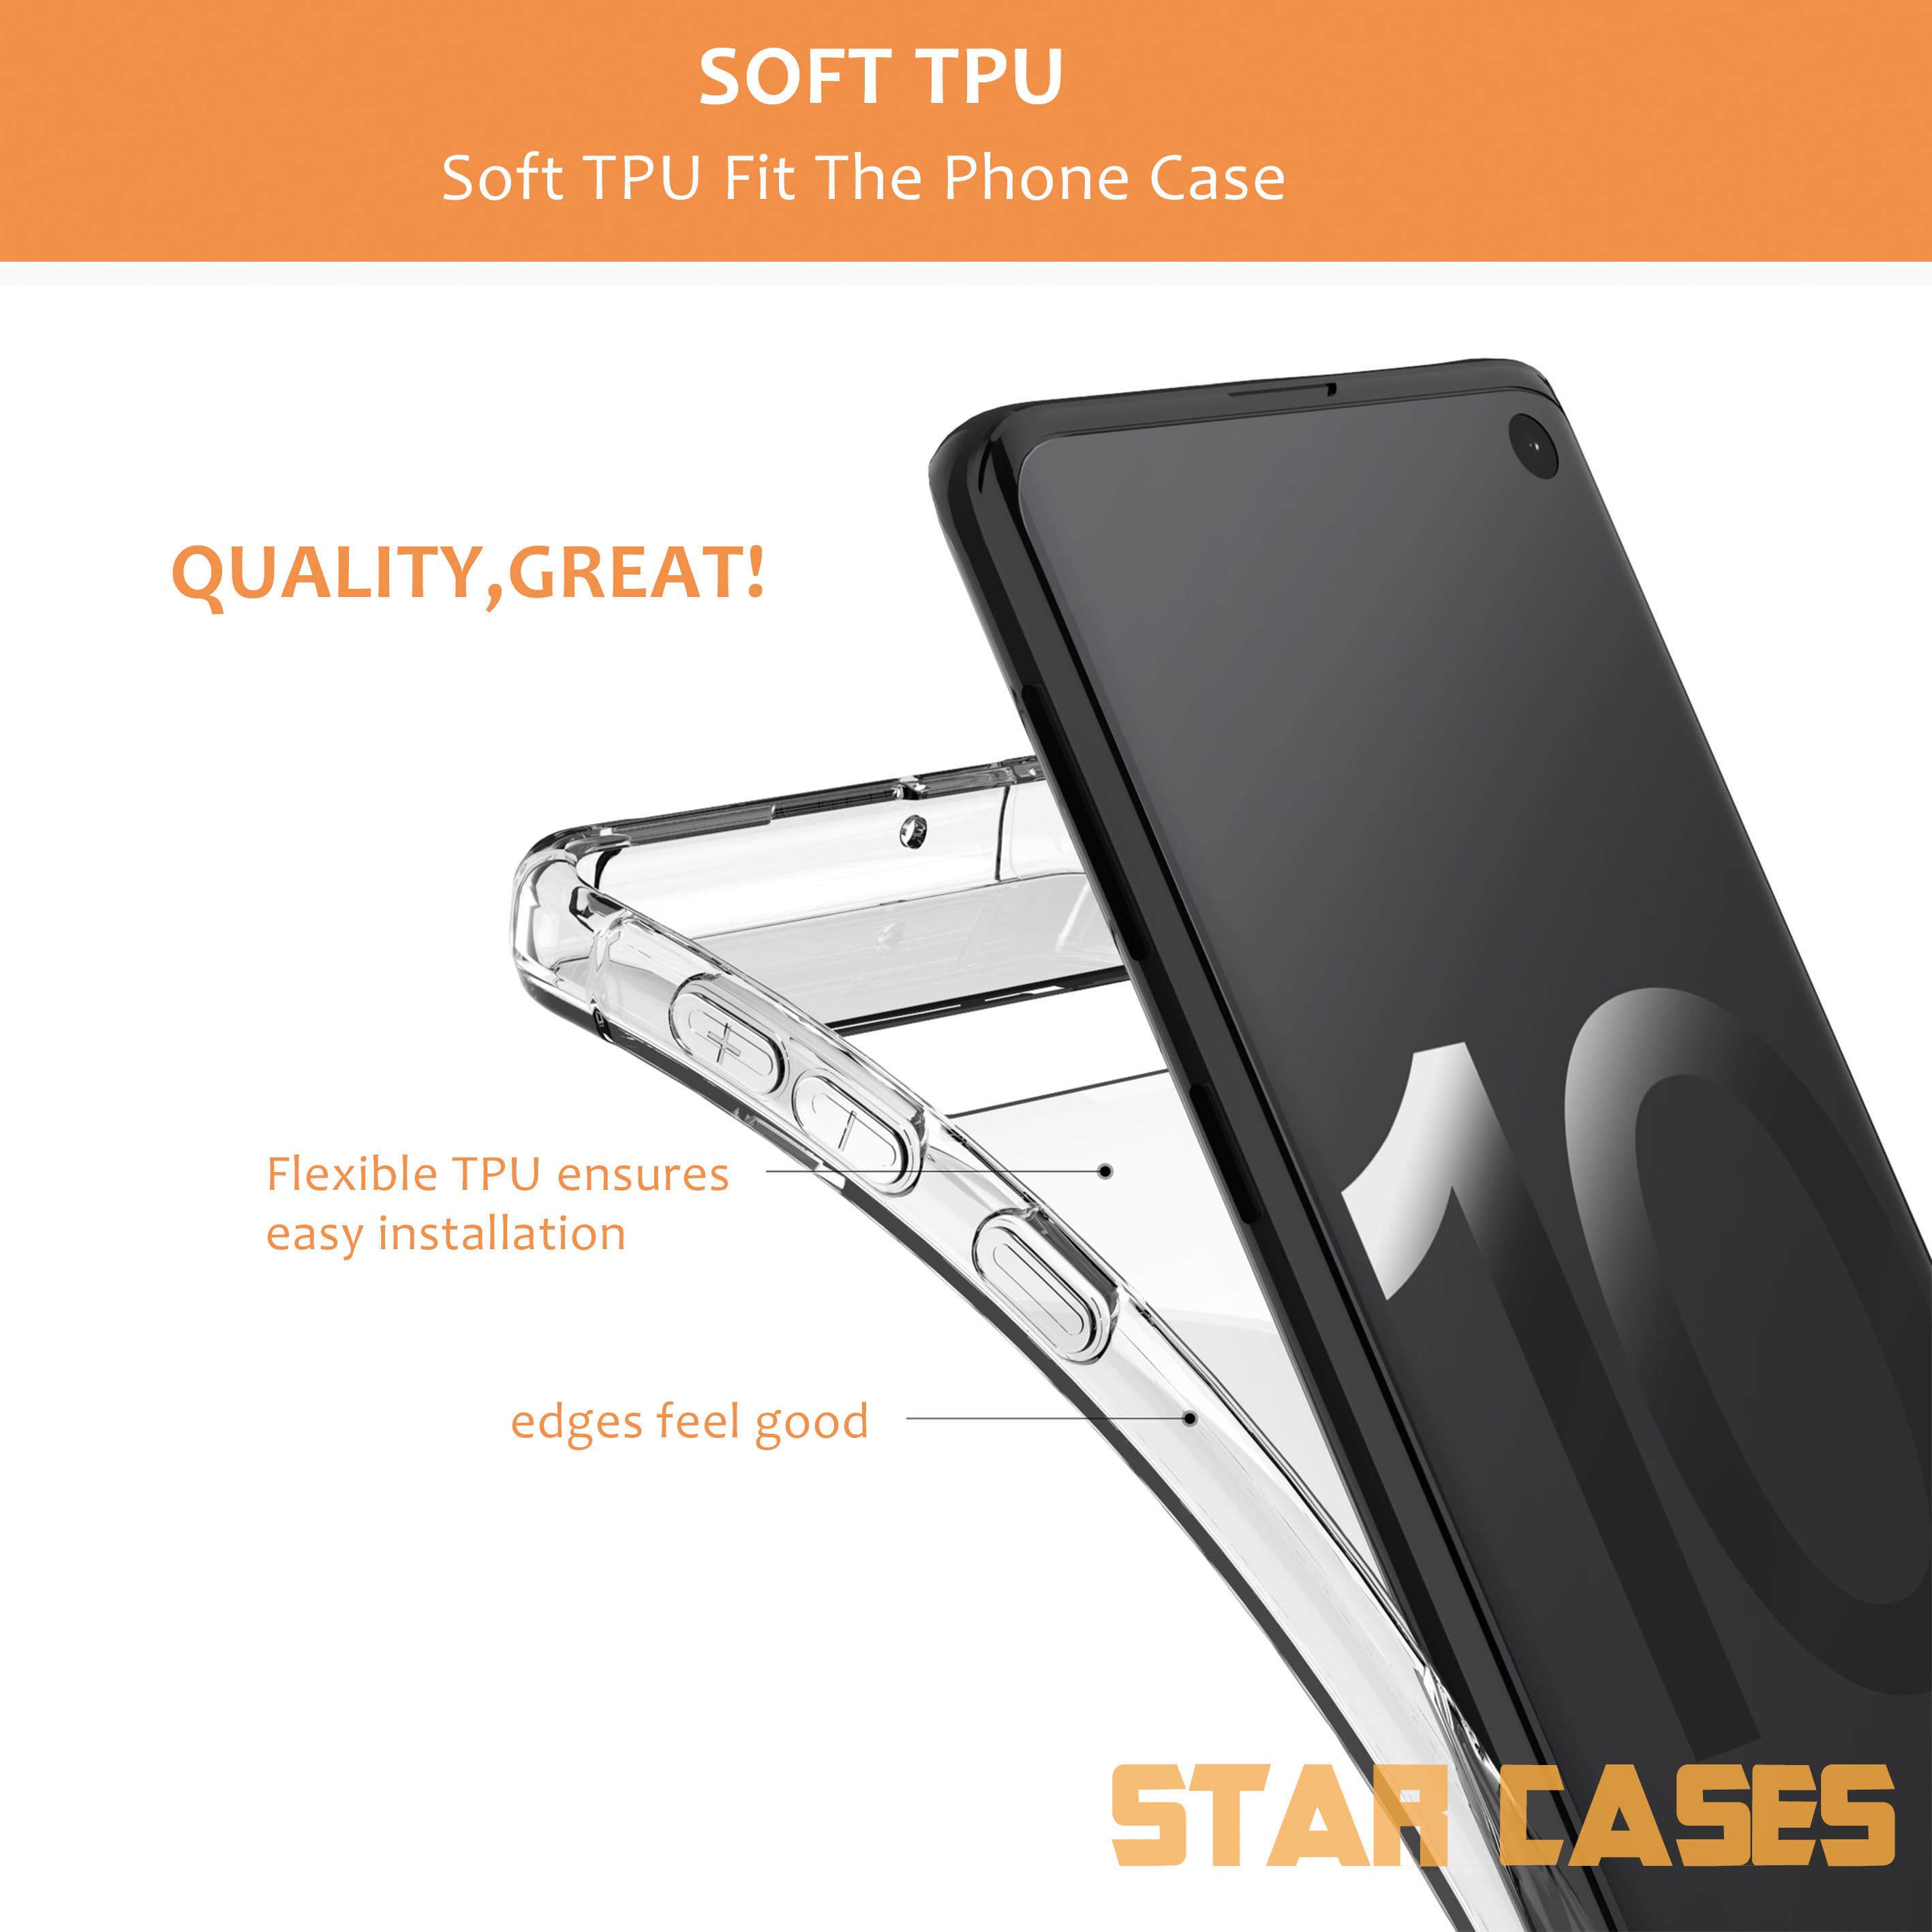 Samsung S20 Clear Soft Bumper Case